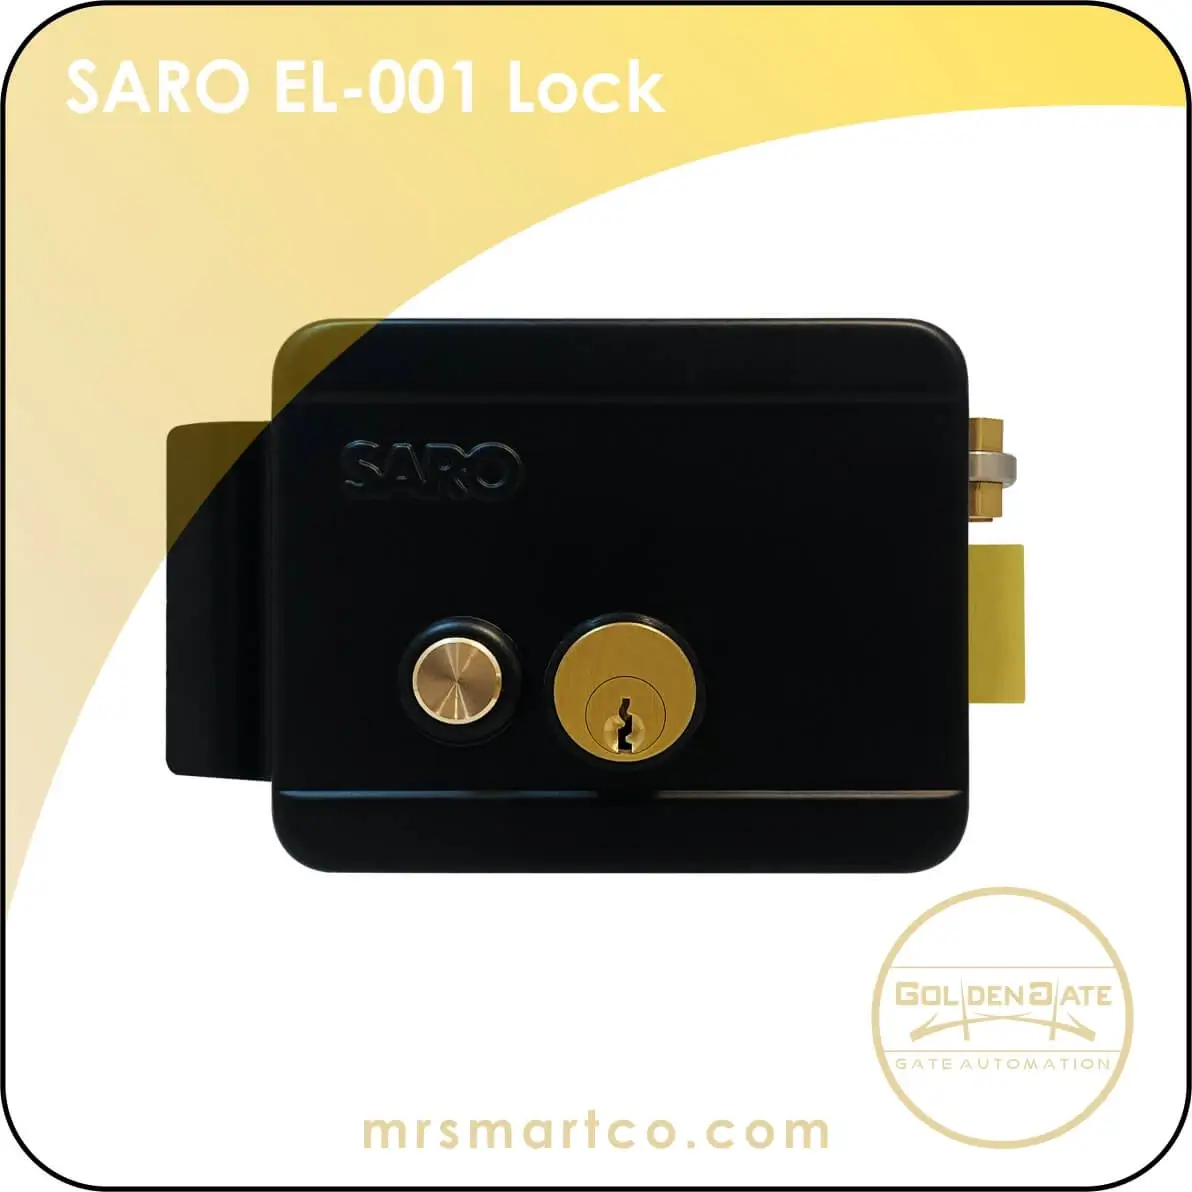 Saro EL-001 Lock